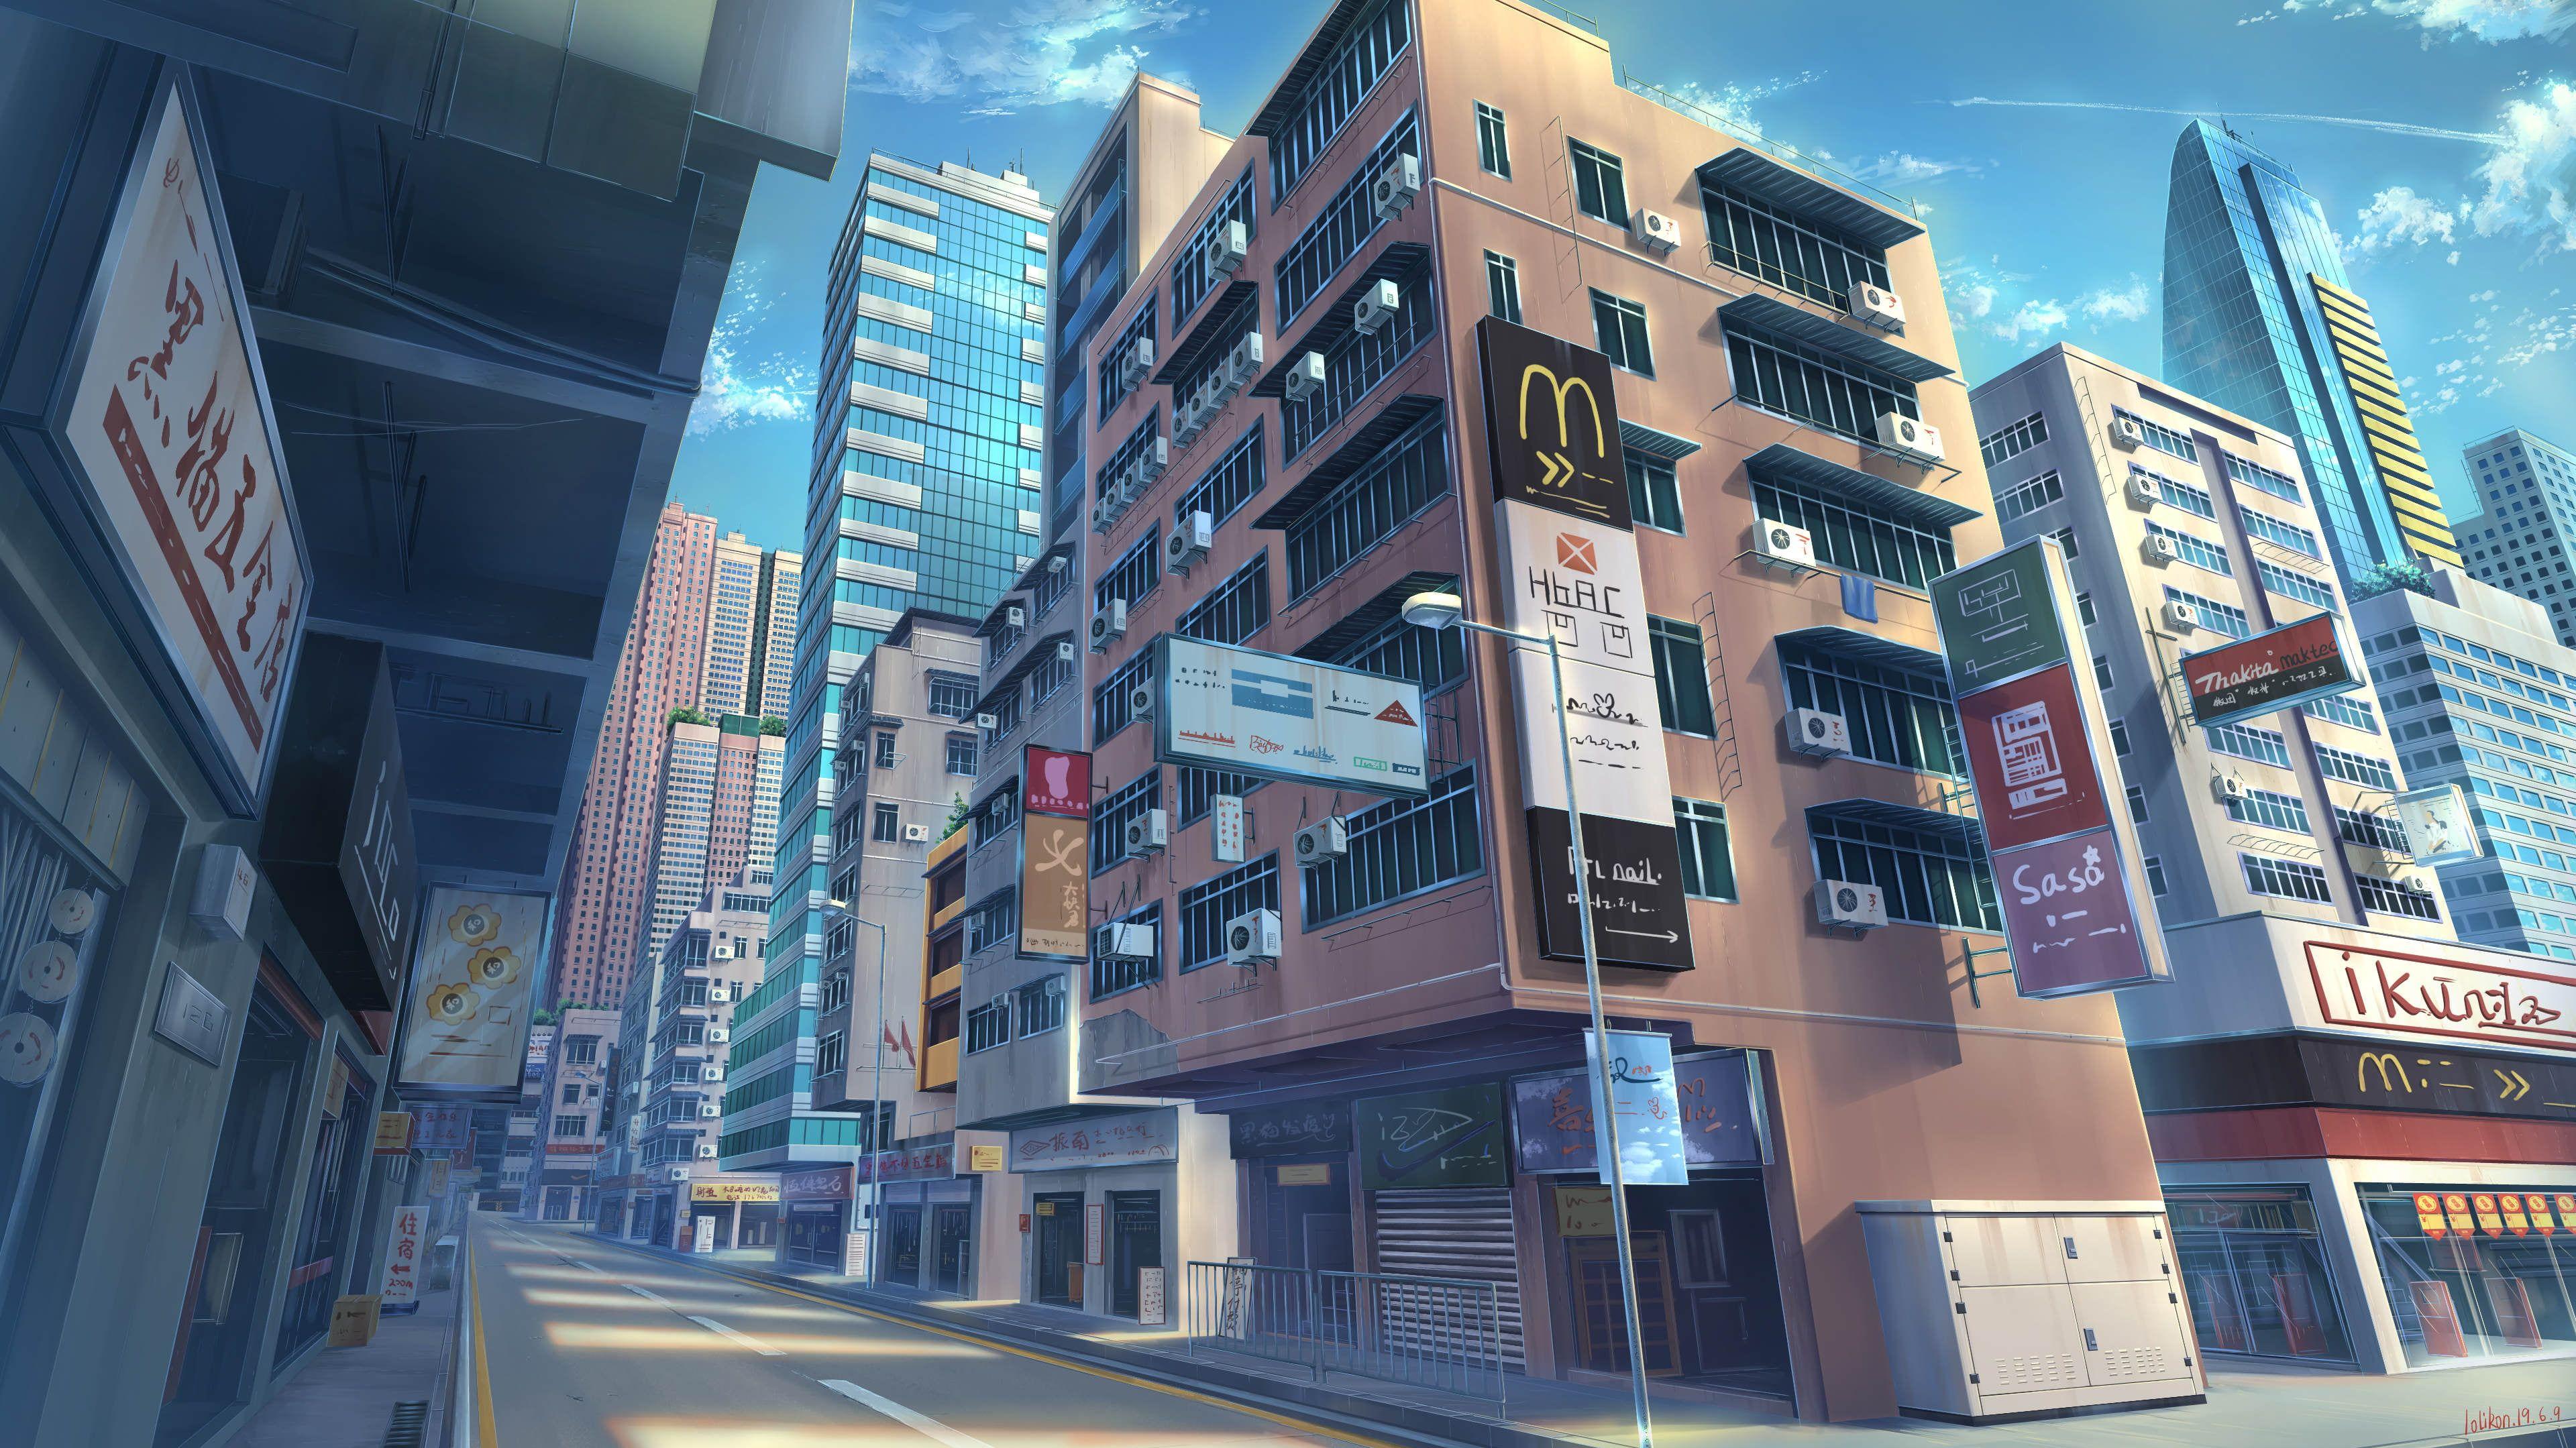 Cảm nhận thành phố xây dựng như trong anime, với những tòa nhà độc đáo và bố cục ấn tượng. Thỏa mãn trí tưởng tượng của bạn với những khung cảnh hùng vĩ và thị giác đầy màu sắc này, đồng thời hỗ trợ cho bạn tìm cảm hứng mới cho cuộc sống của mình.